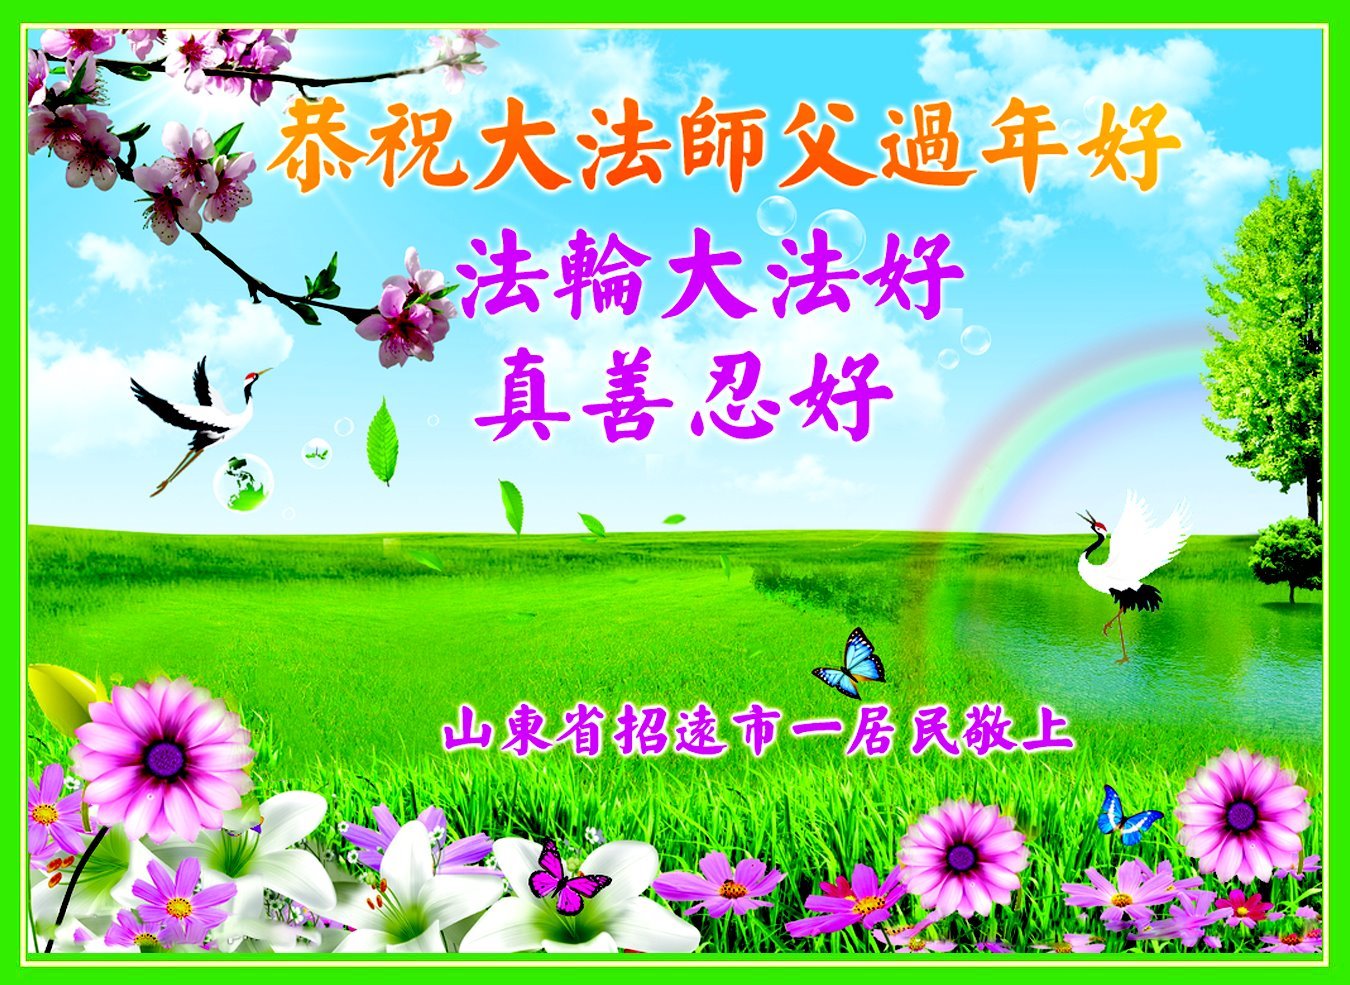 Image for article Les sympathisants du Falun Dafa souhaitent à Maître Li Hongzhi un bon Nouvel An chinois